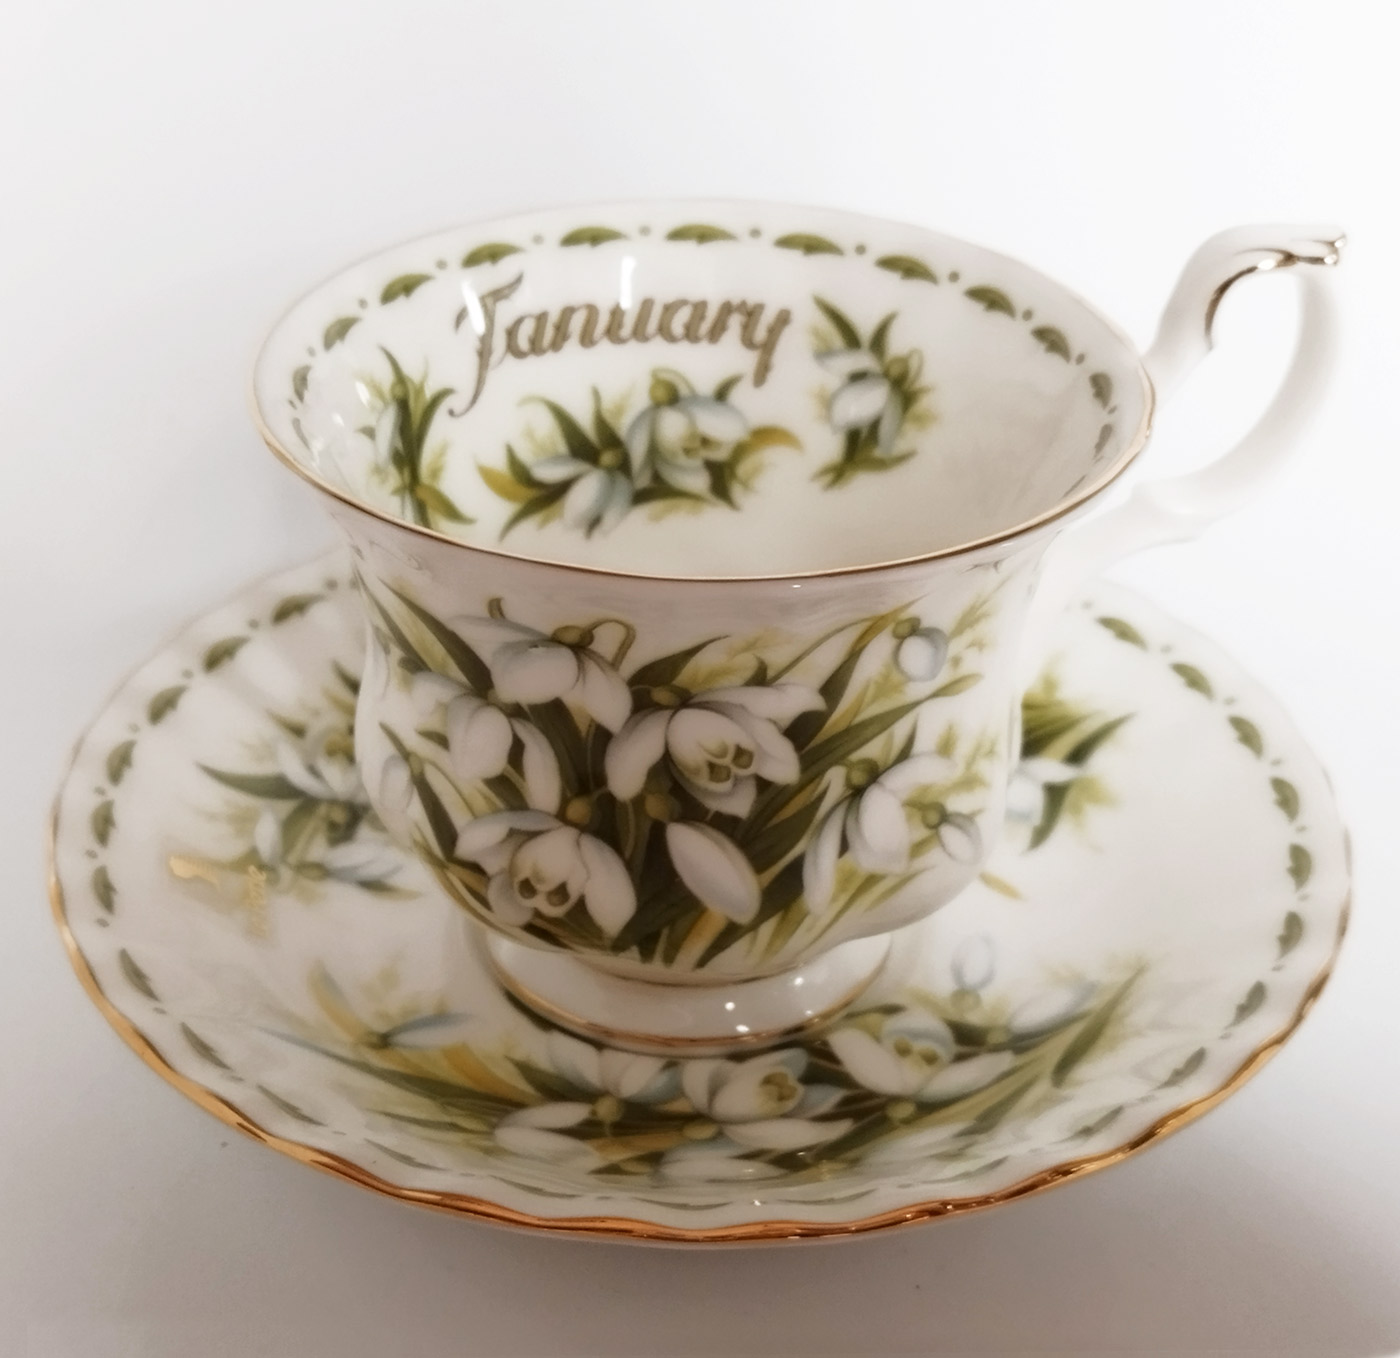 Tazza da tè con piattino Royal Albert collezione Flower of the month mese  di gennaio/january